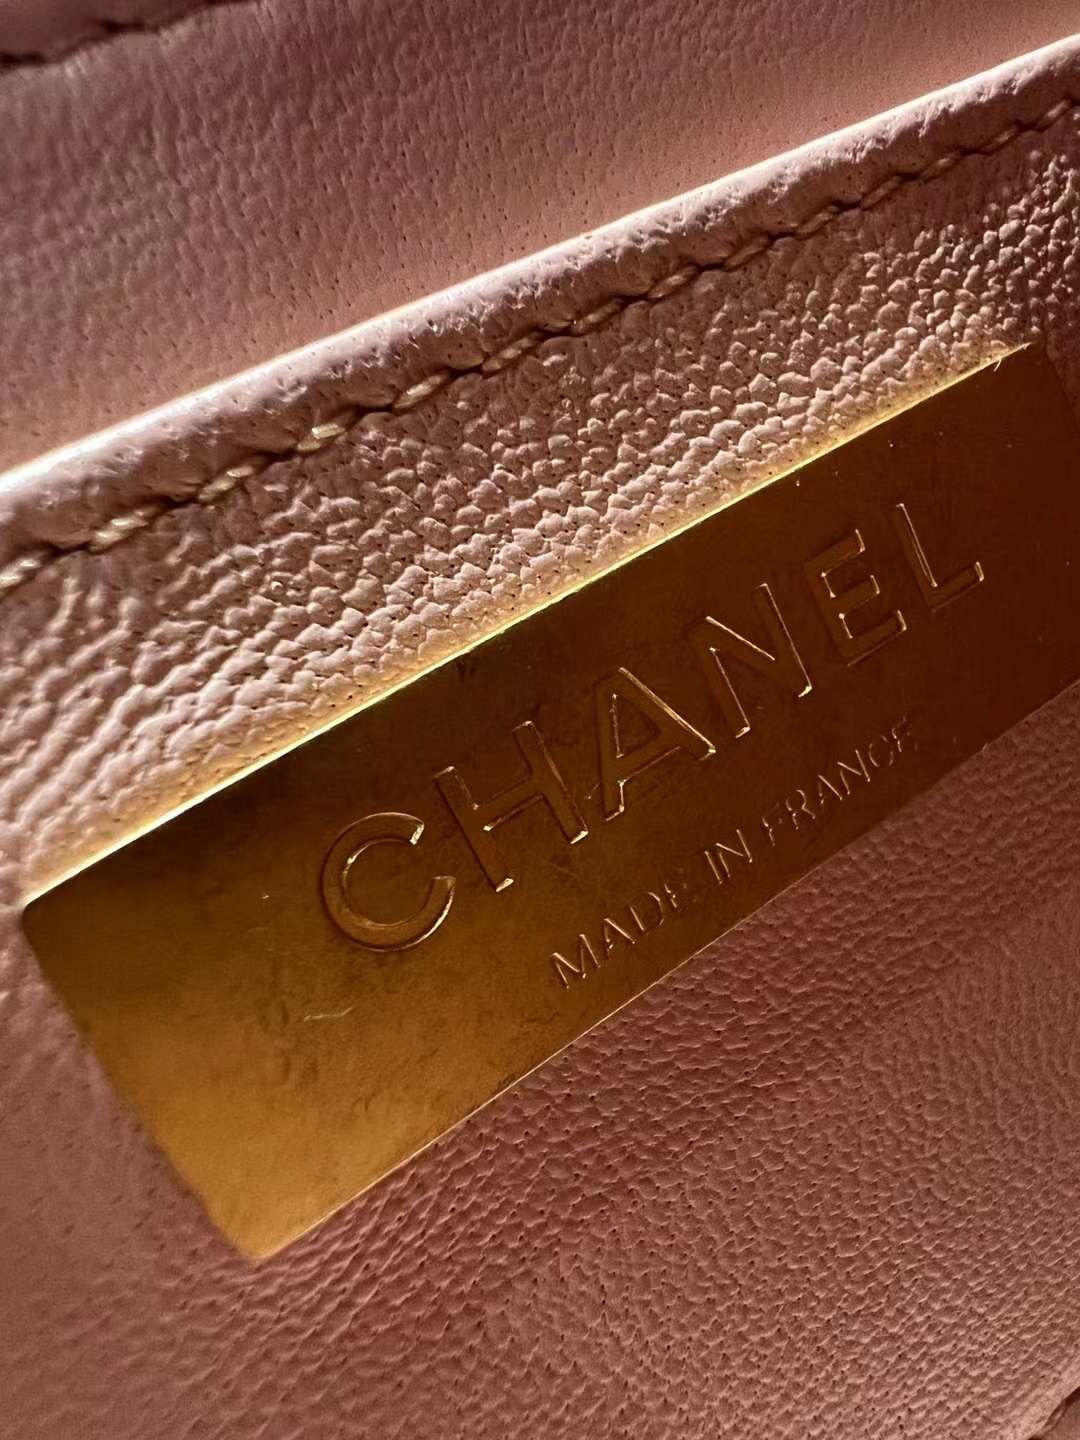 【P2370】Chanel女包货源 香奈儿23年春夏新款手柄口盖包盒子化妆包 粉色